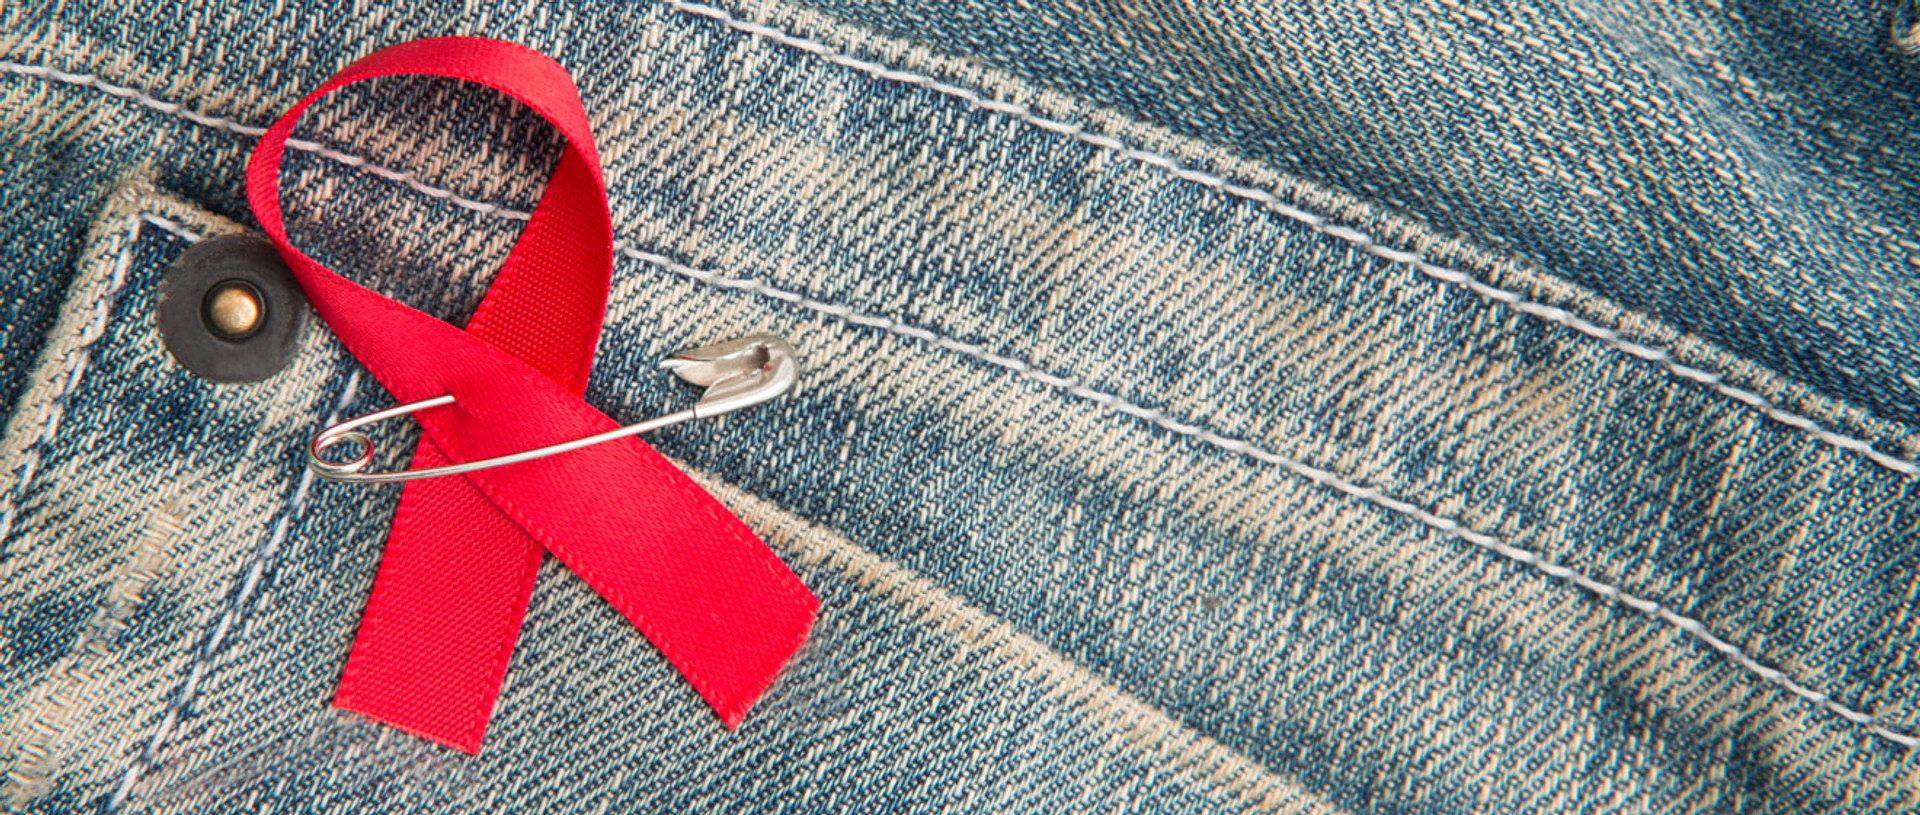 Час змінити ставлення: чому тестування на ВІЛ має стати звичною практикою